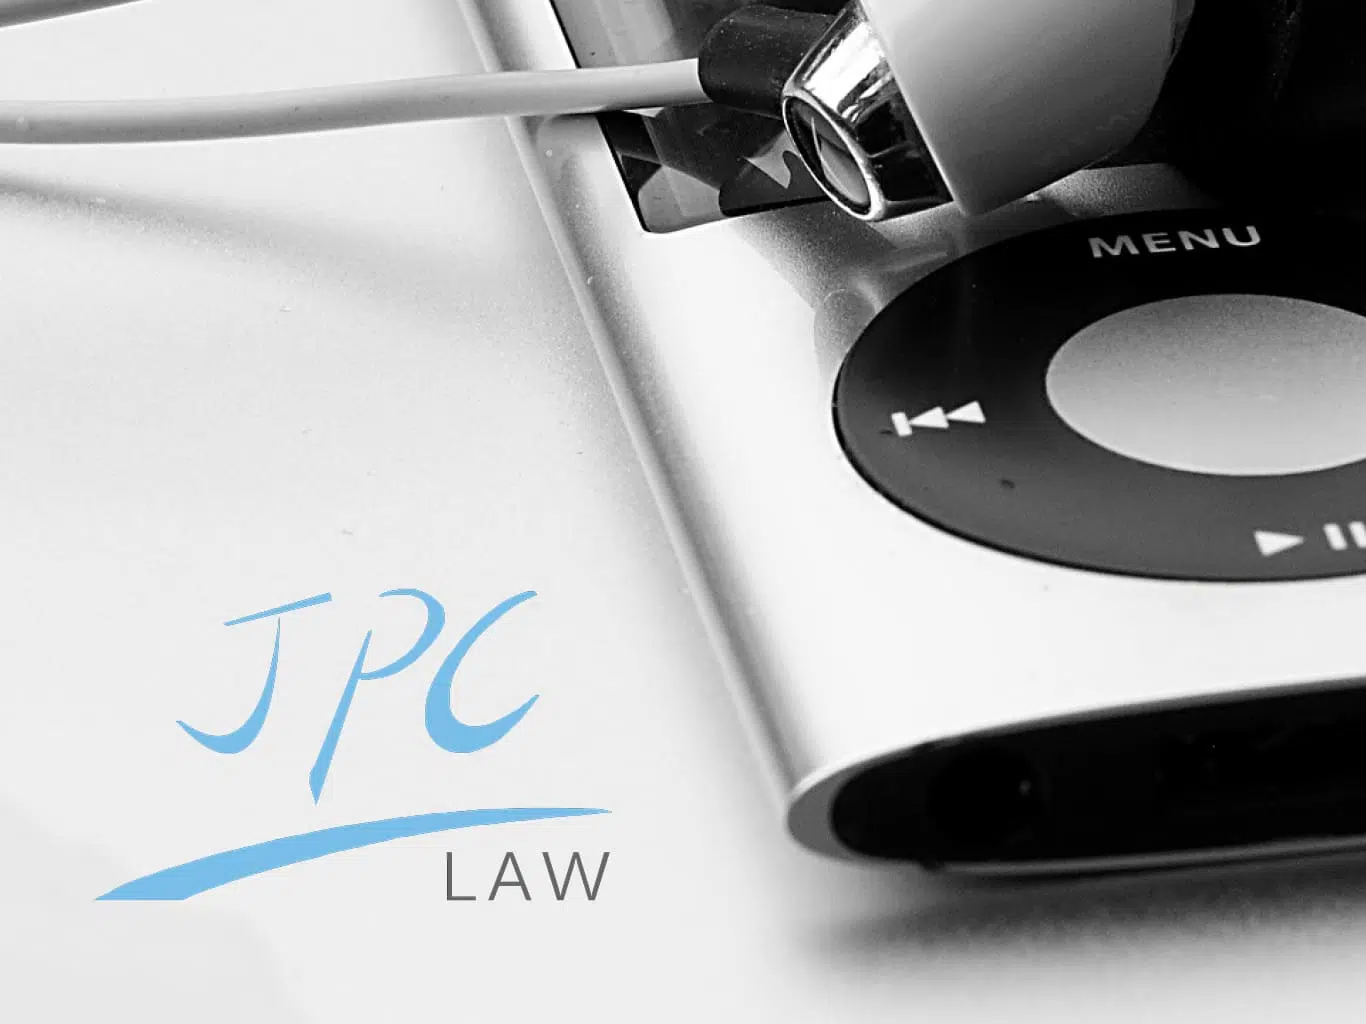 JPC Law image